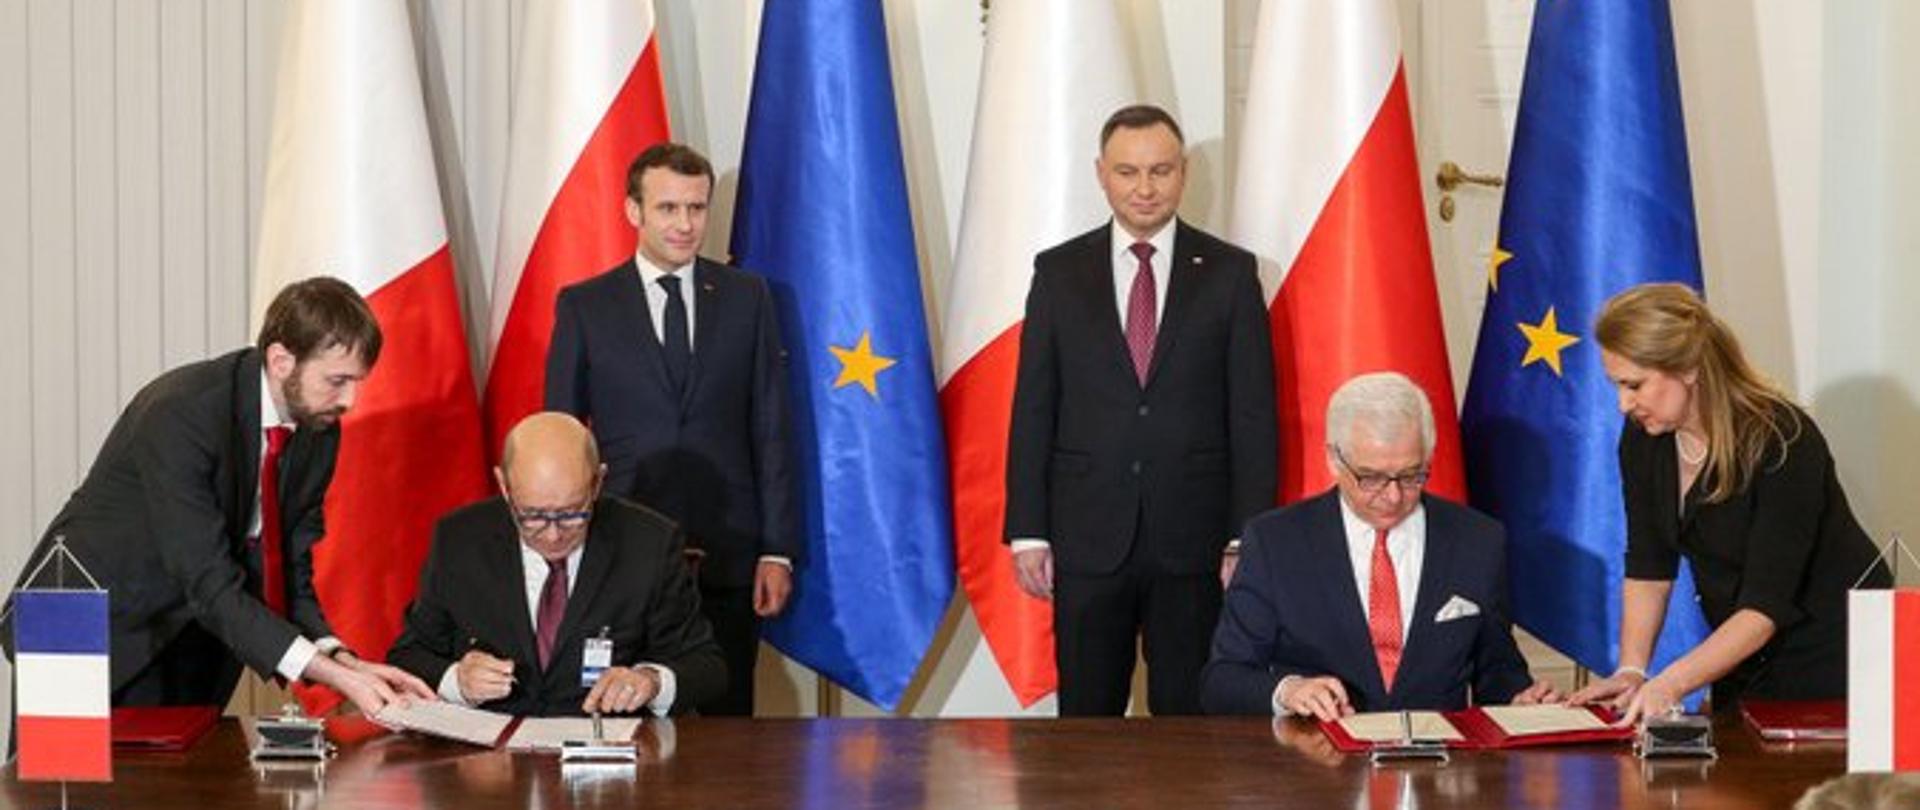 Odnowienie Partnerstwa Strategicznego z Francją oraz nowe otwarcie w relacjach polsko-francuskich